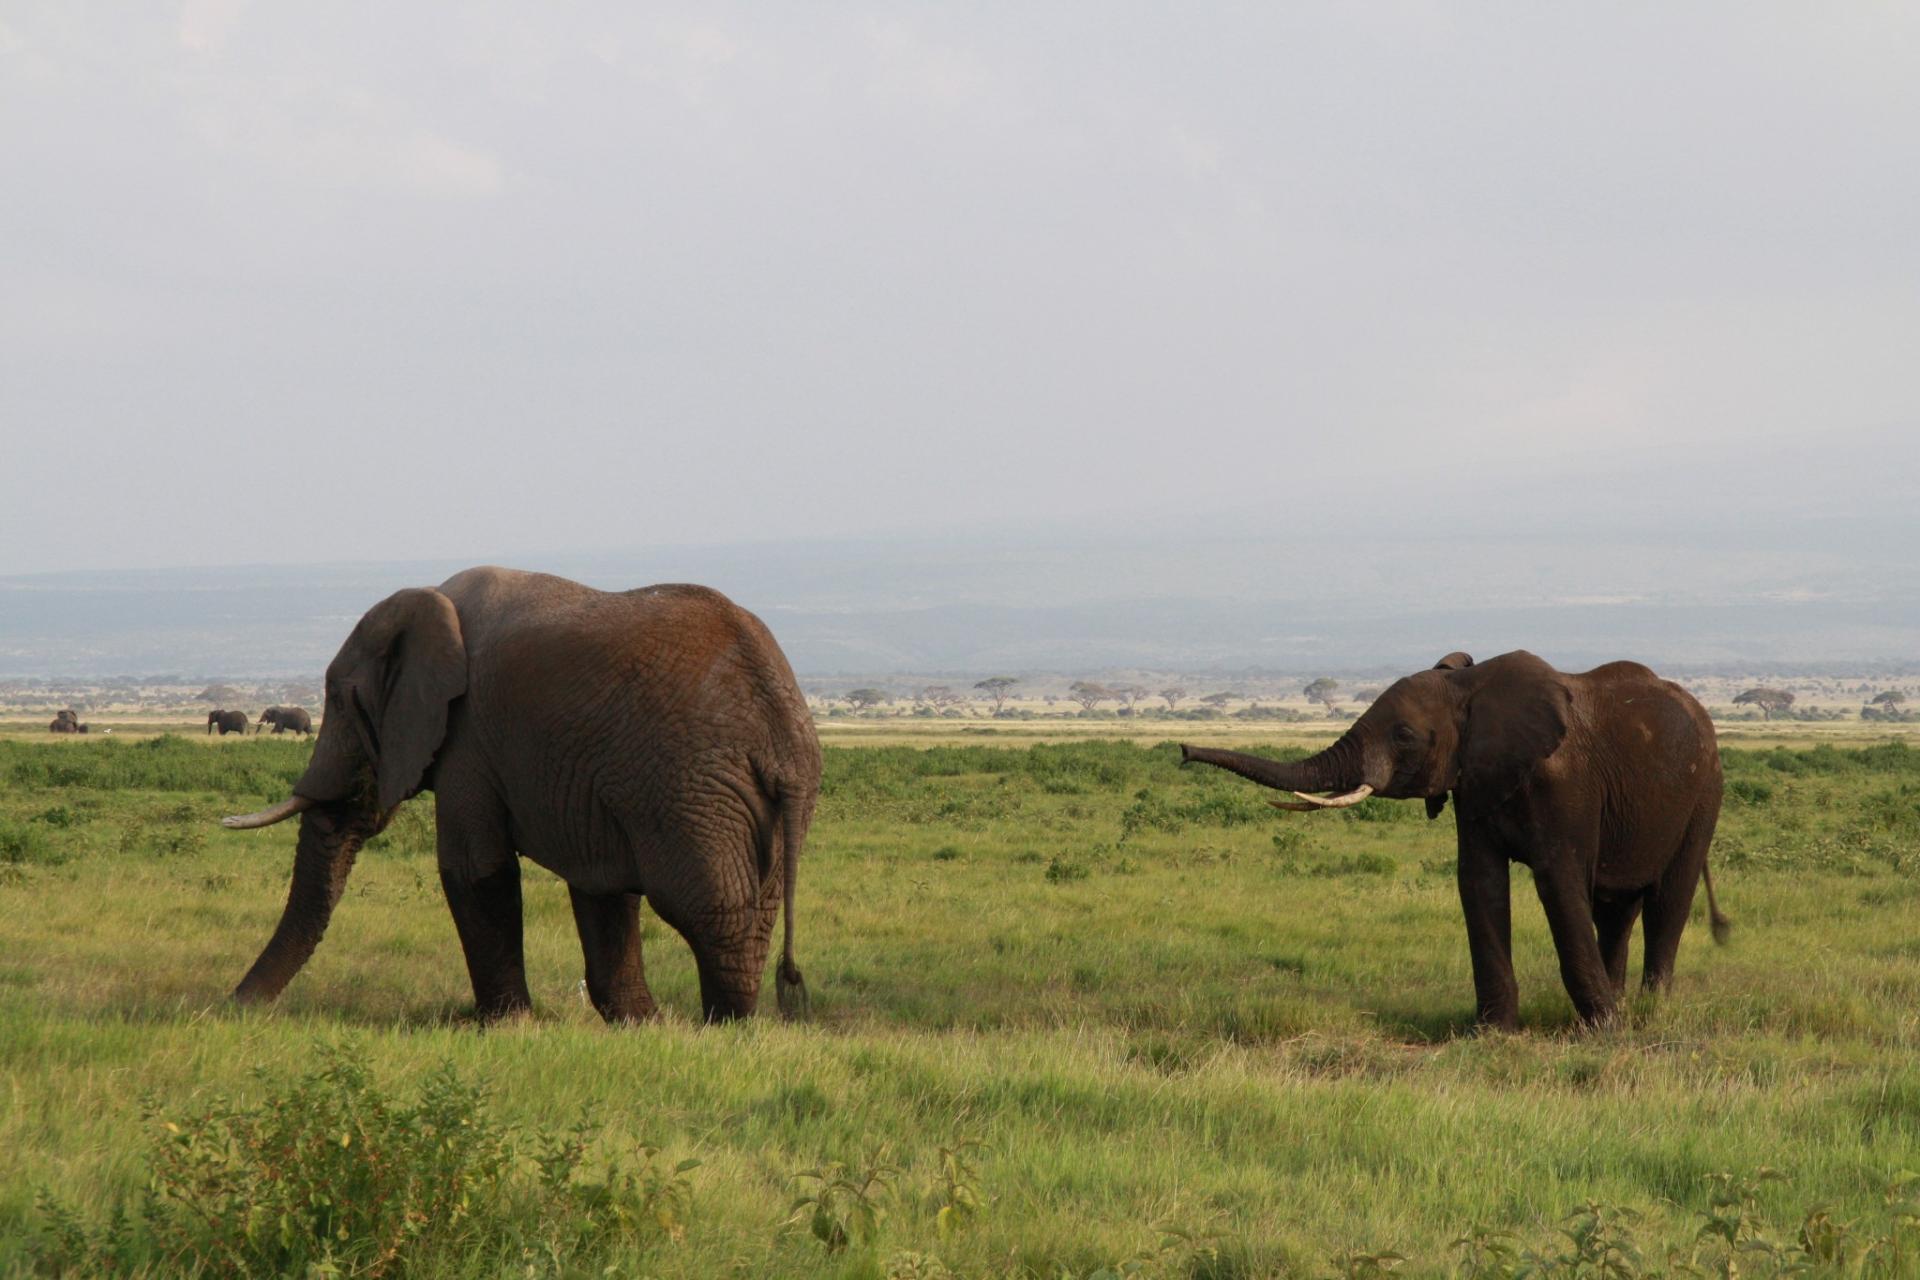 Amboseli herd of elephants mount kilimanjaro kenya adventure safaris active adventures yha kenya travel epic adventures epic wildlife safari .